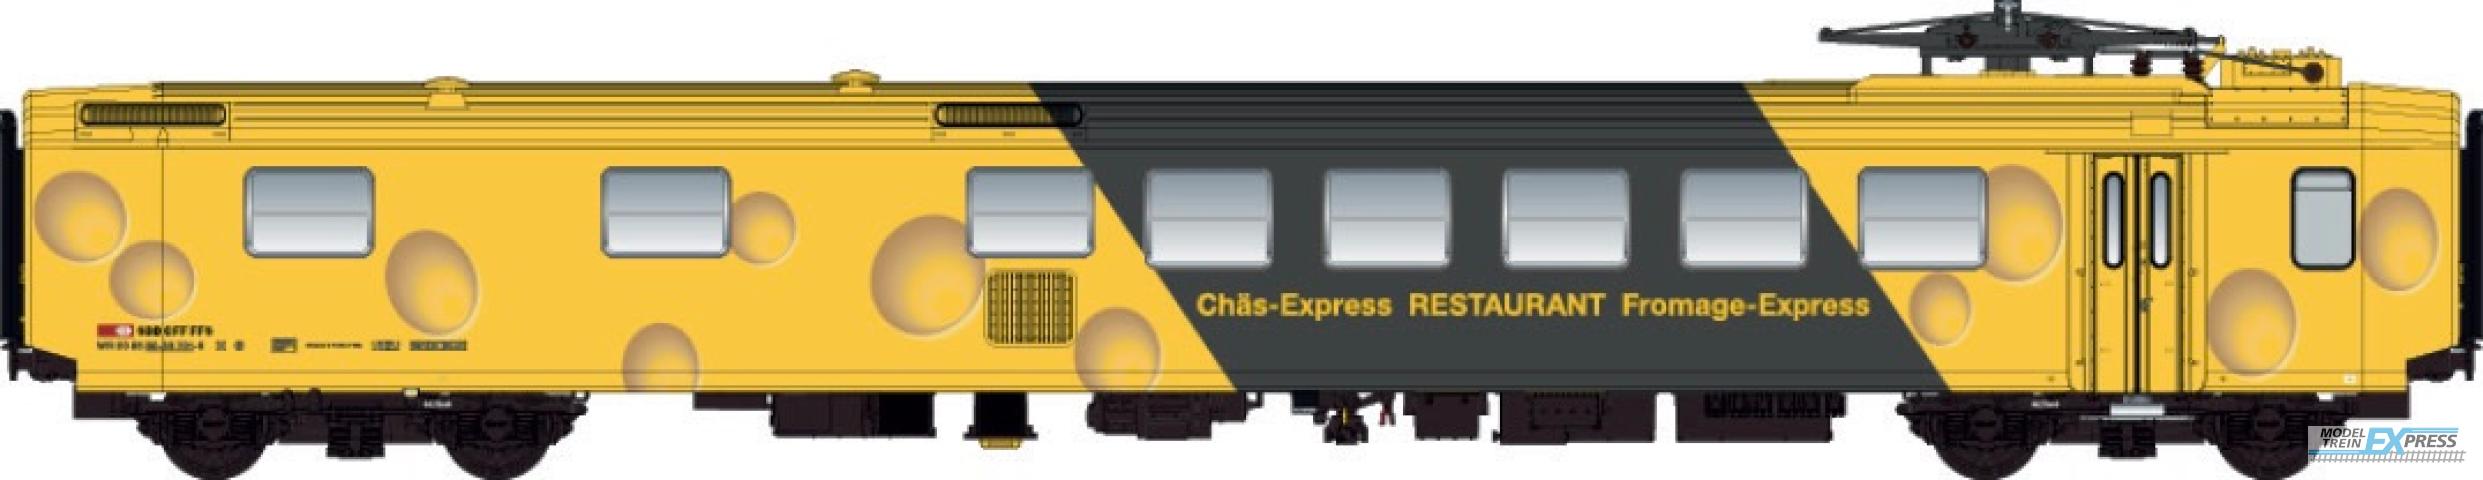 LS Models 47263AC EW I, geel, groene band, kaas livrei, nieuwe logo, Restaurant Chäs-Express opschrift  /  Ep. IV-V  /  SBB  /  HO  /  AC  /  1 P.